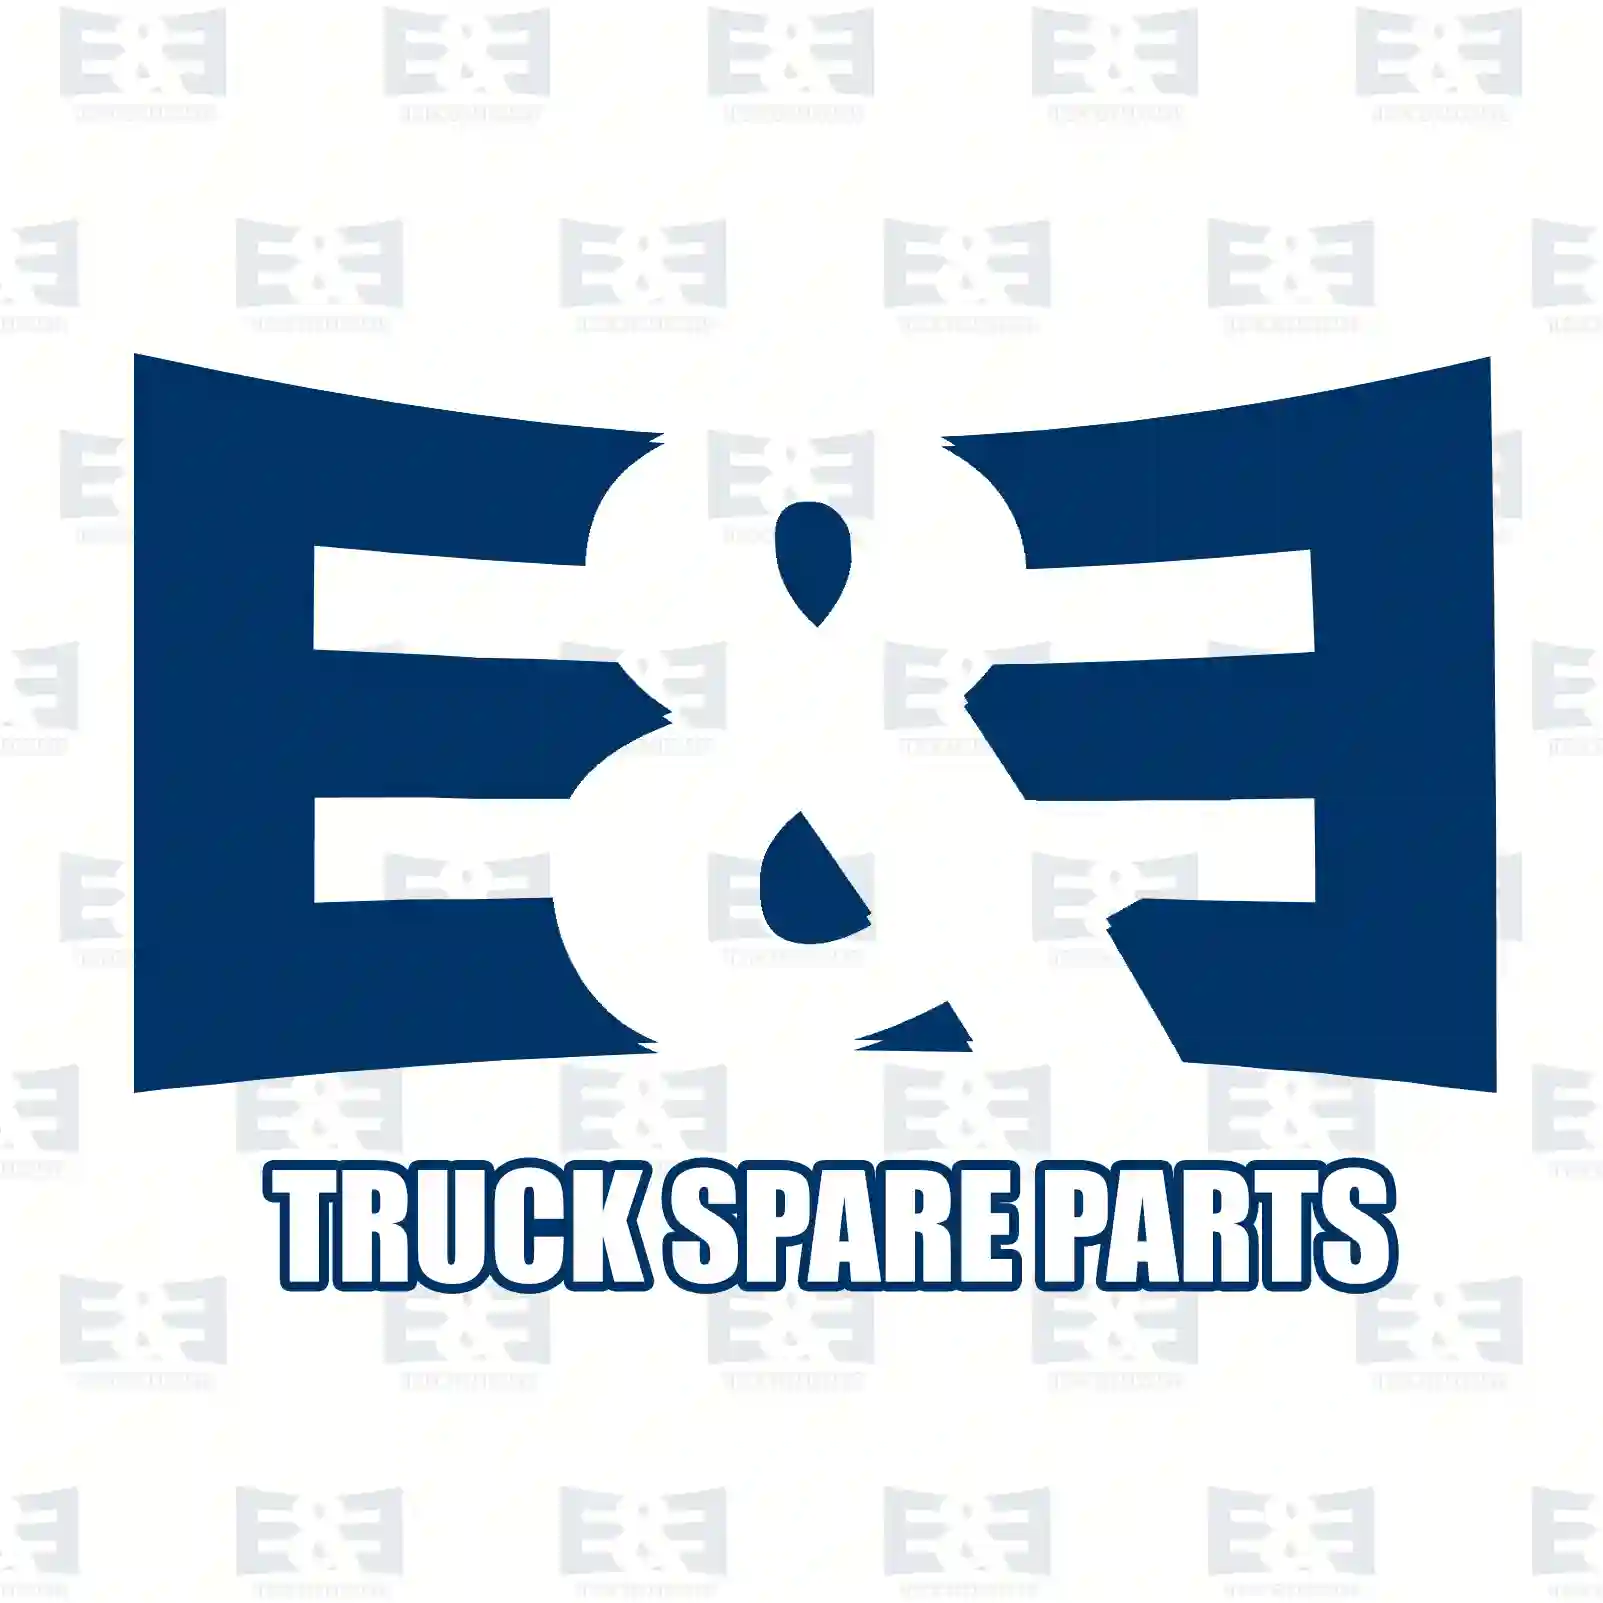 Oil seal, 2E2293328, 1345278, ZG02615-0008, ||  2E2293328 E&E Truck Spare Parts | Truck Spare Parts, Auotomotive Spare Parts Oil seal, 2E2293328, 1345278, ZG02615-0008, ||  2E2293328 E&E Truck Spare Parts | Truck Spare Parts, Auotomotive Spare Parts